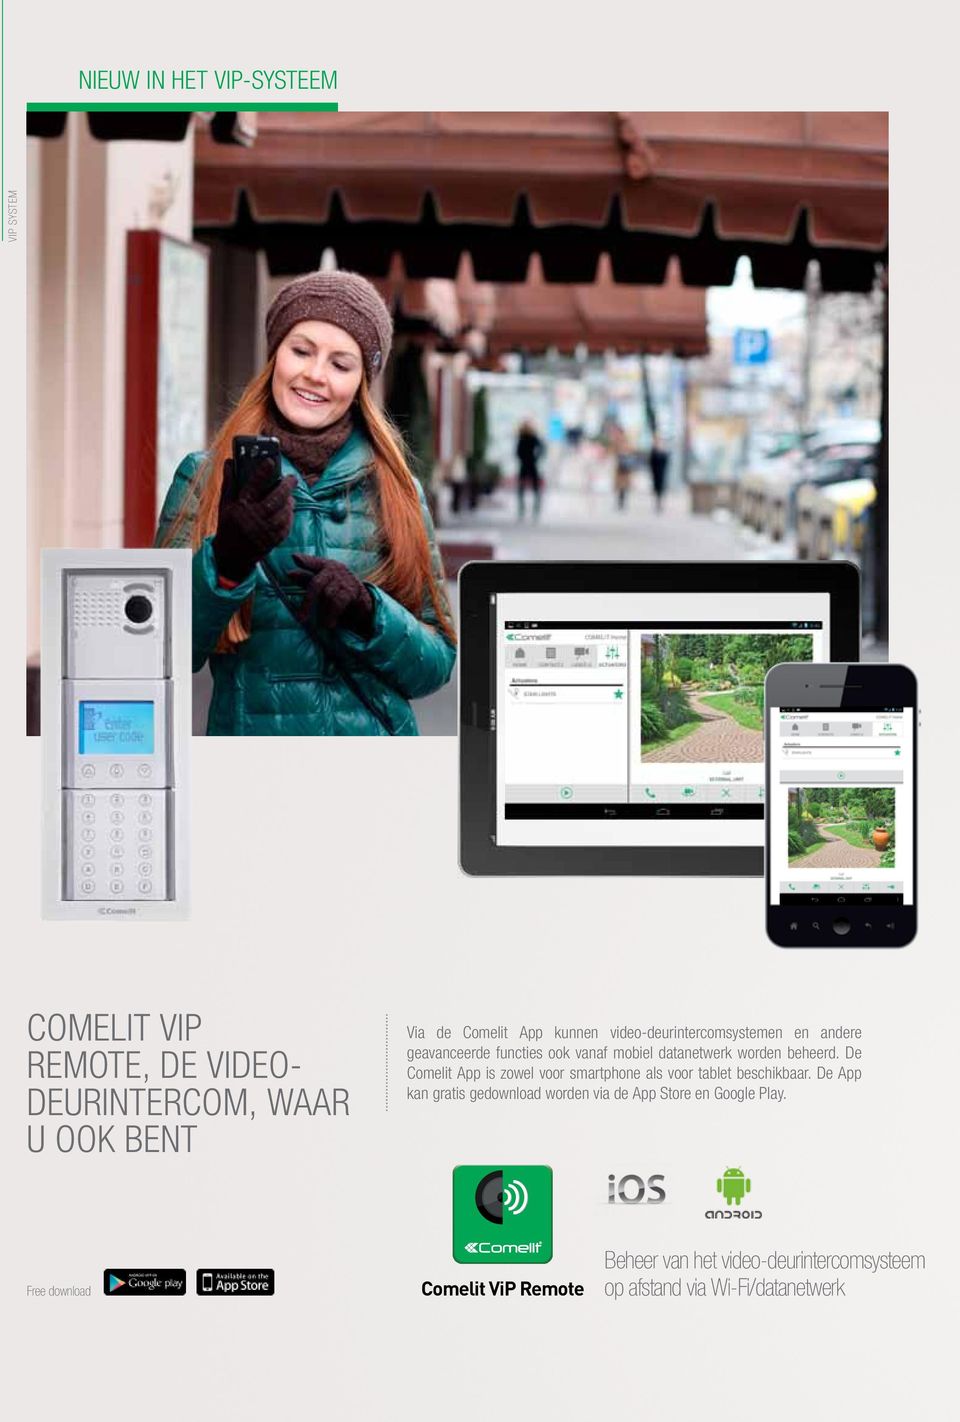 De Comelit App is zowel voor smartphone als voor tablet beschikbaar.